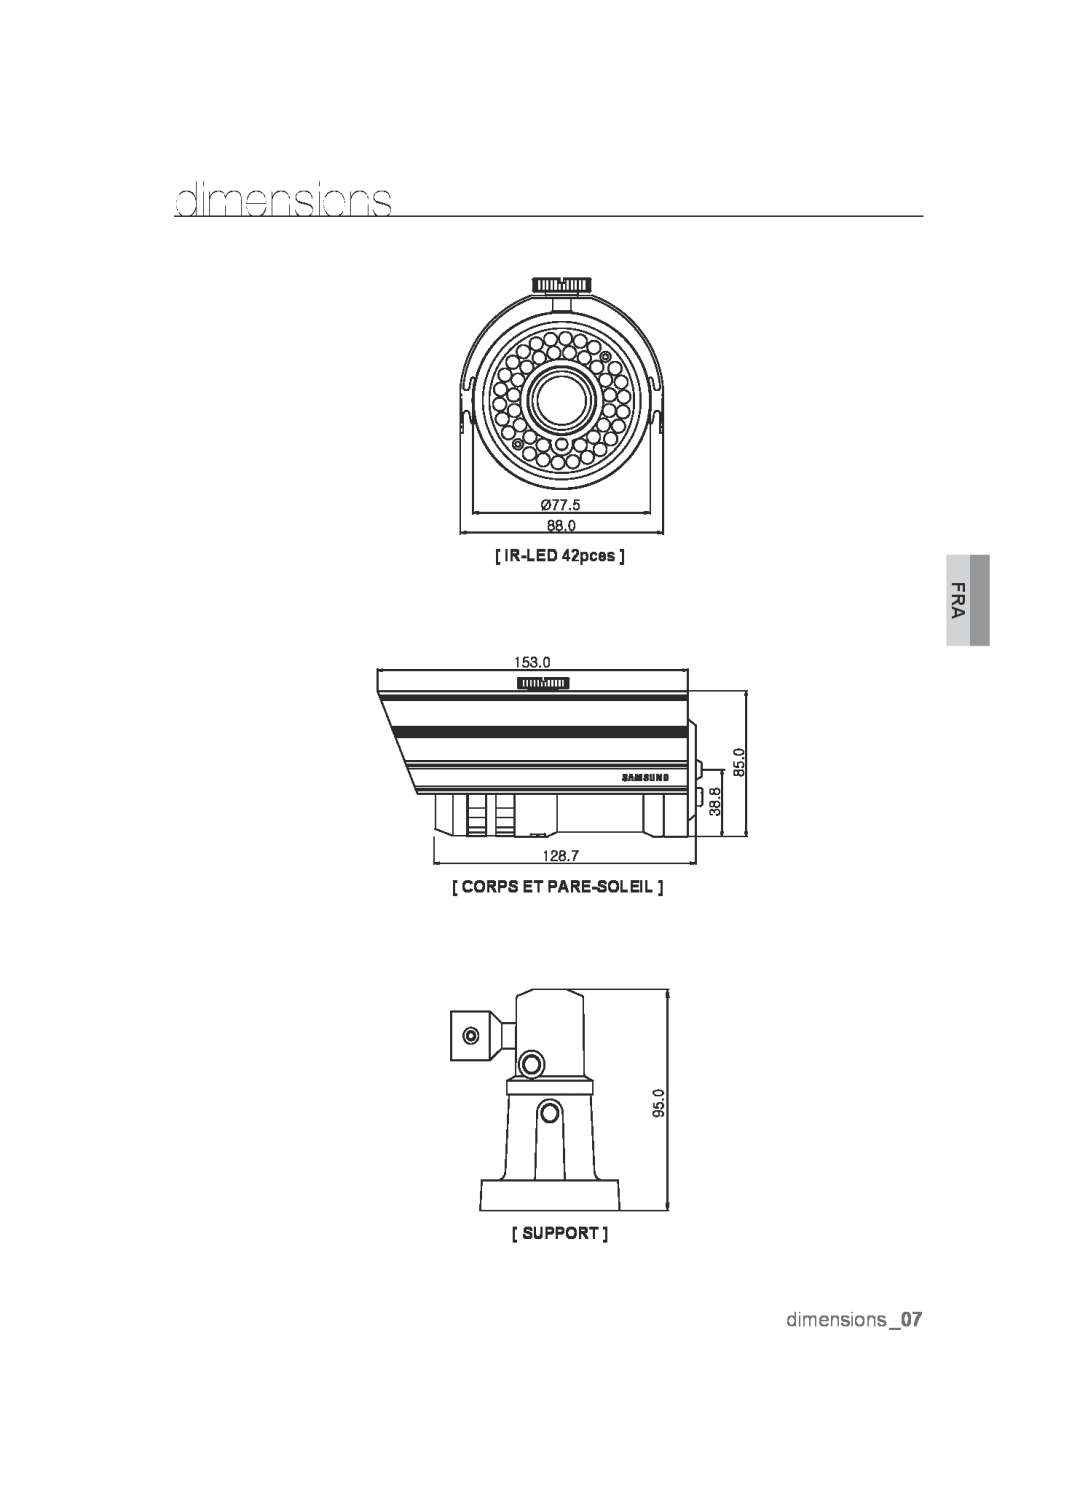 Samsung SCC-B9372P manual dimensions, IR-LED 42pces, Corps Et Pare-Soleil Support 